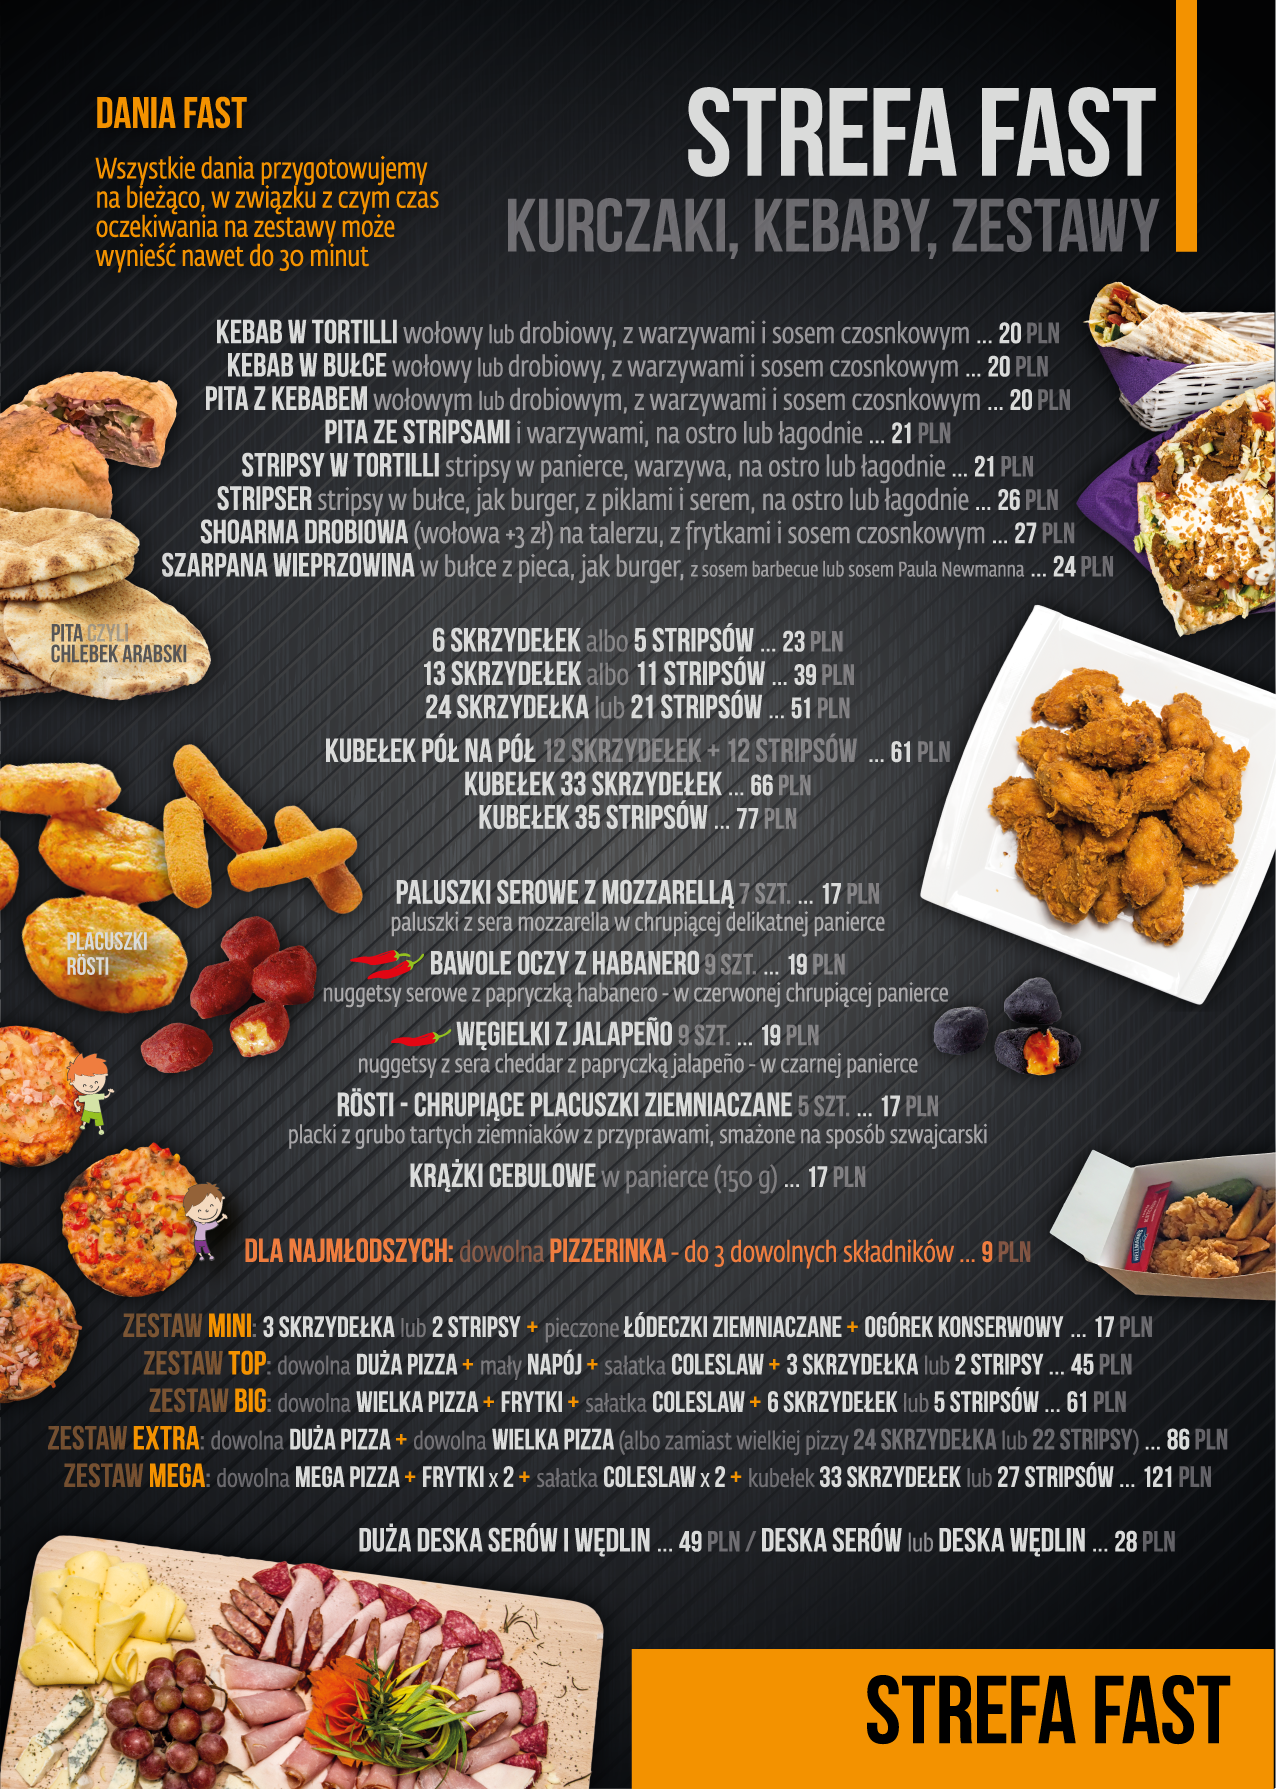 Cztery Korony - doskonała restauracja - pizza, kurczaki po amerykańsku, dania kuchni świata i dania wegańskie